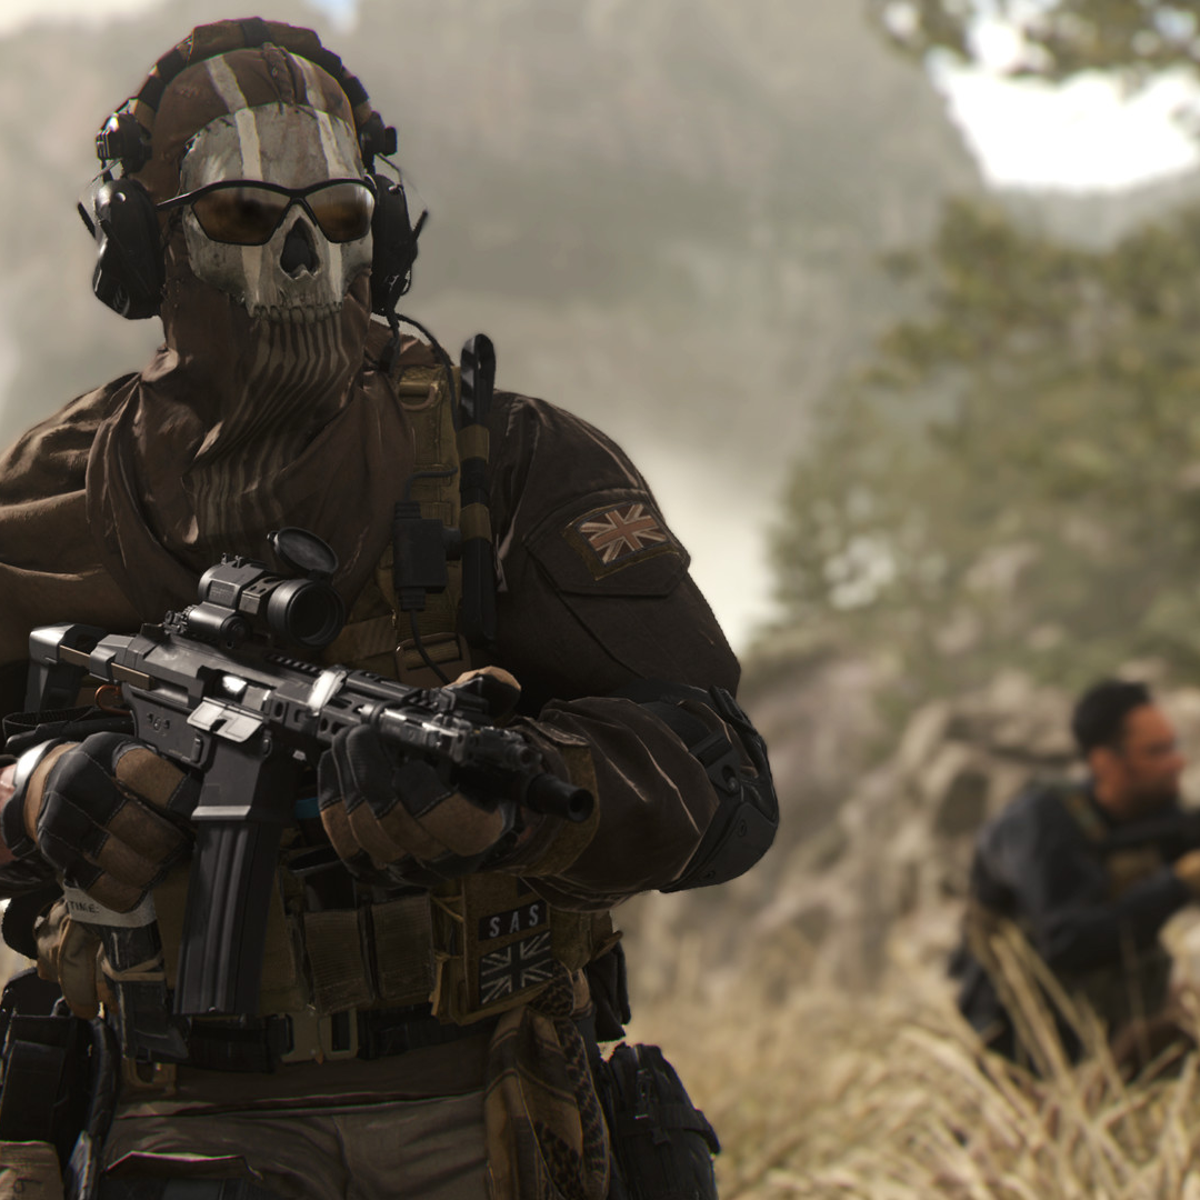 Modern Warfare 2 release time: When does Modern Warfare 2 release?